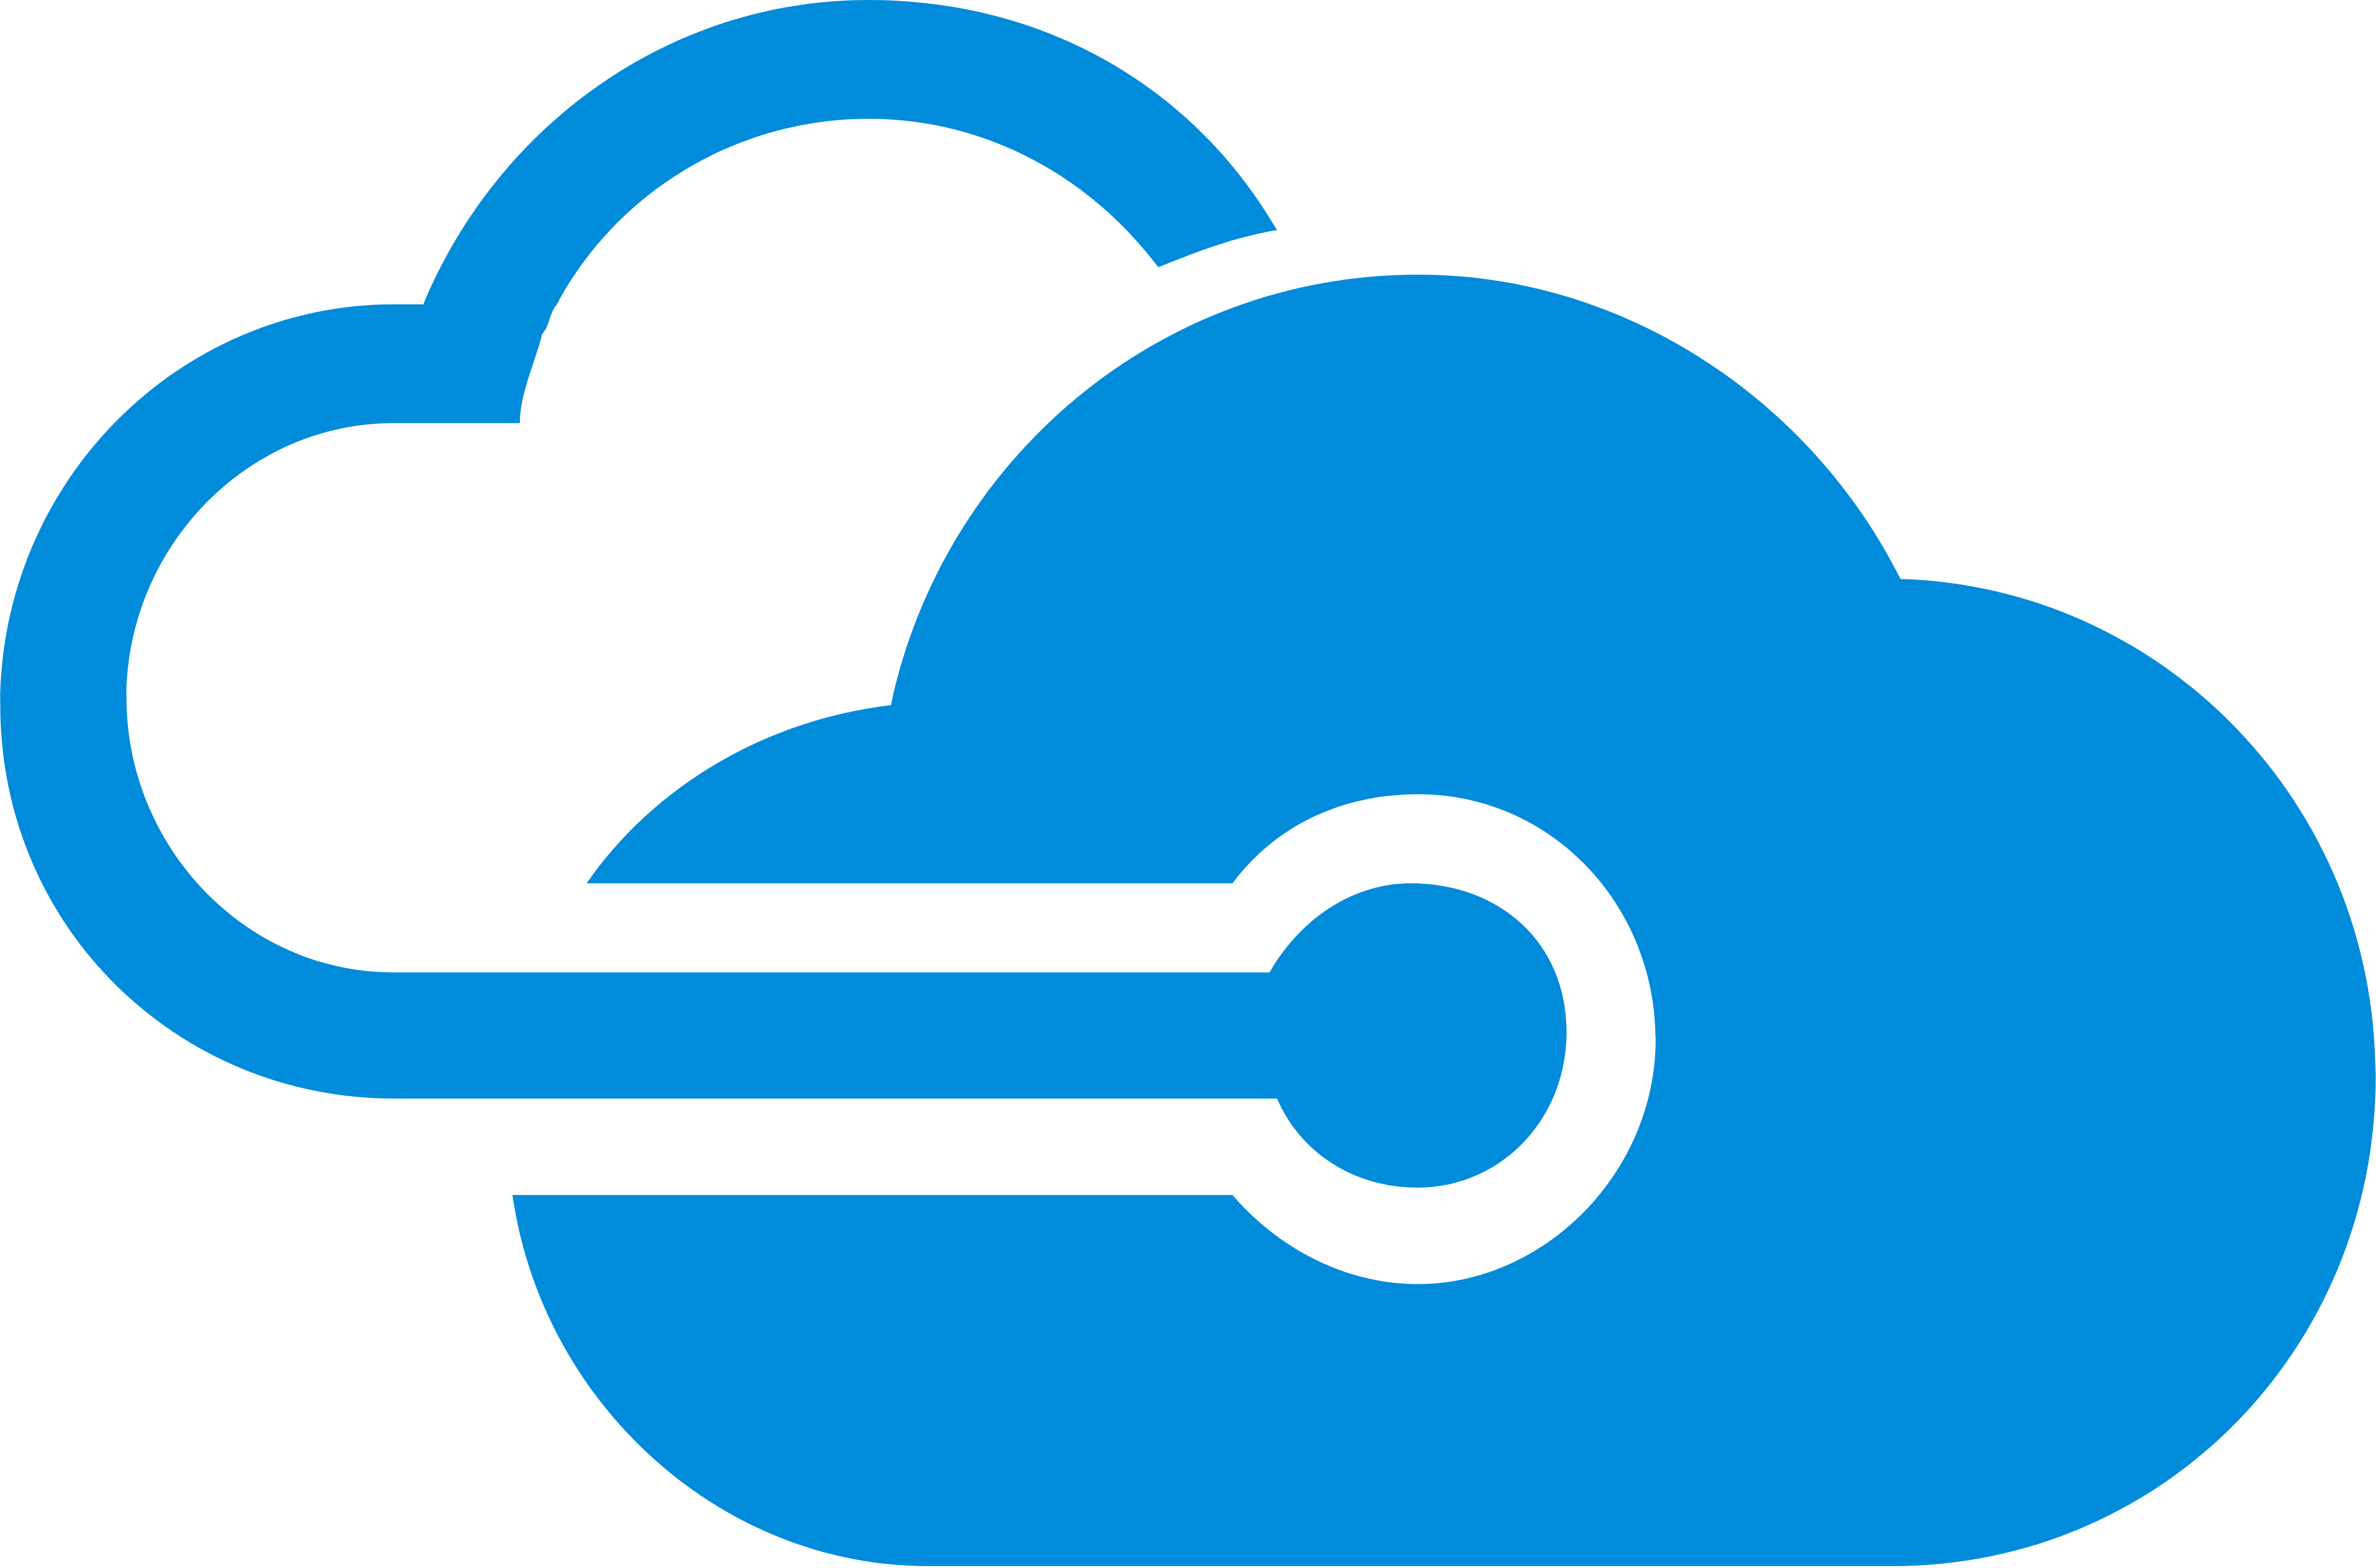 Microsoft Azure Logos Download